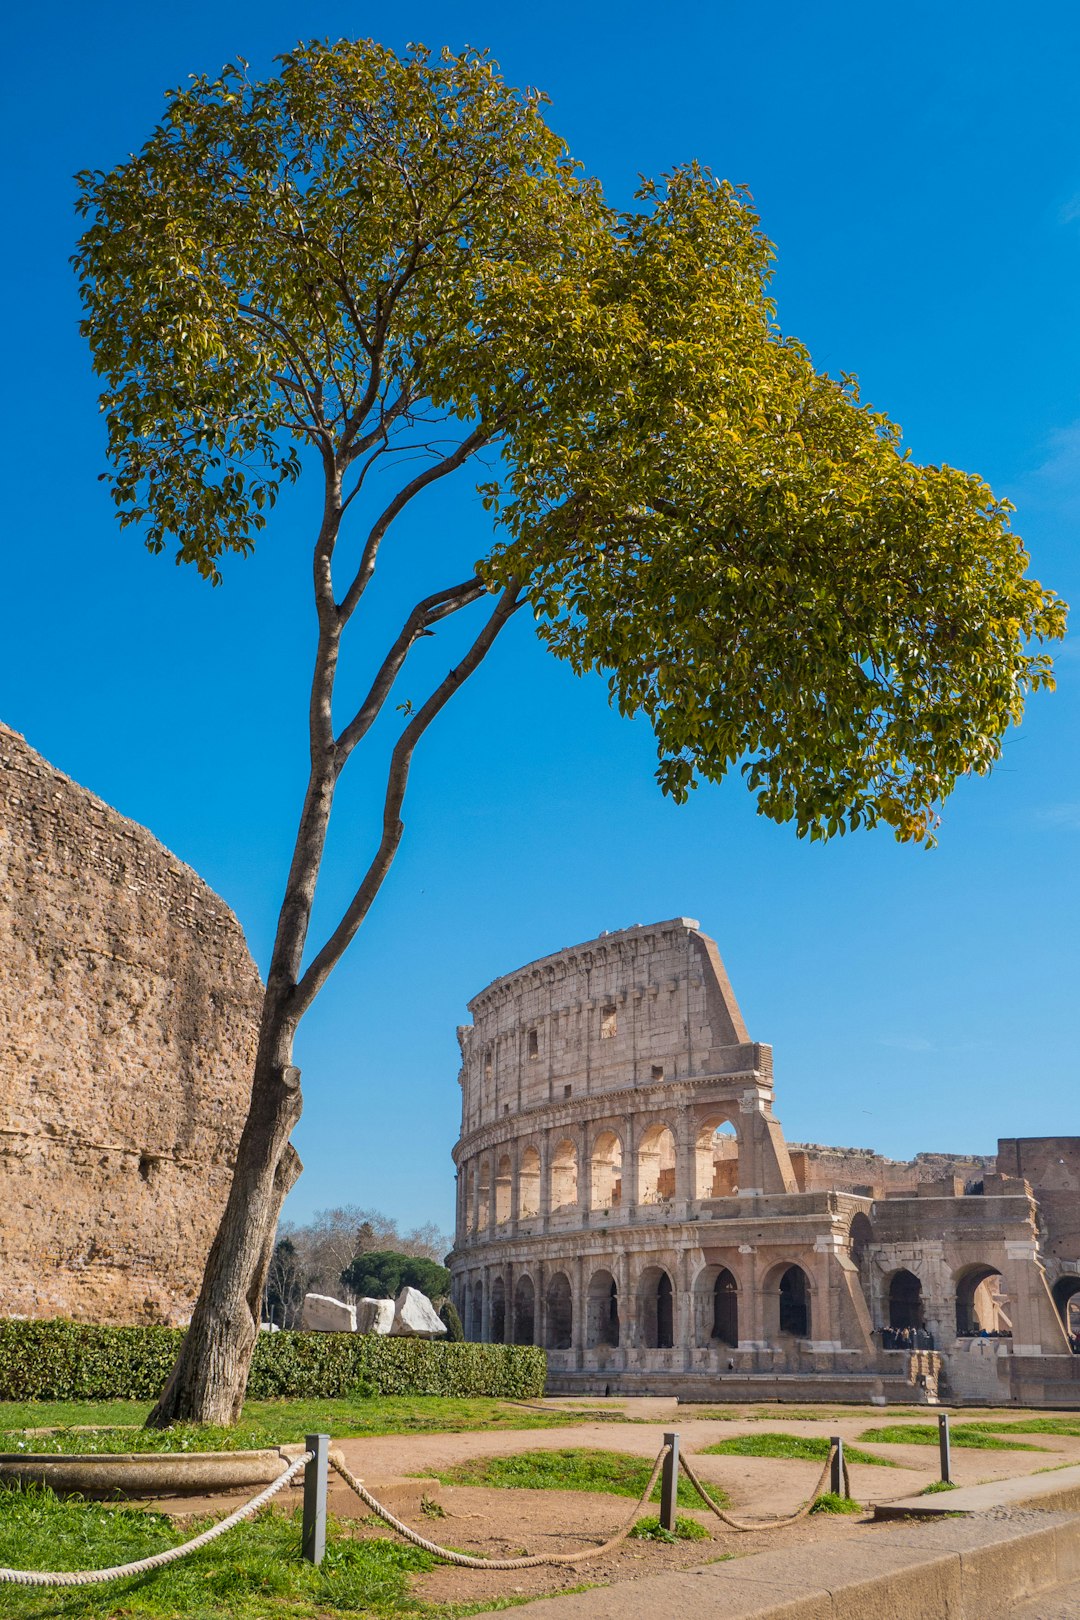 Landmark photo spot Colosseum Piazza di S. Marco